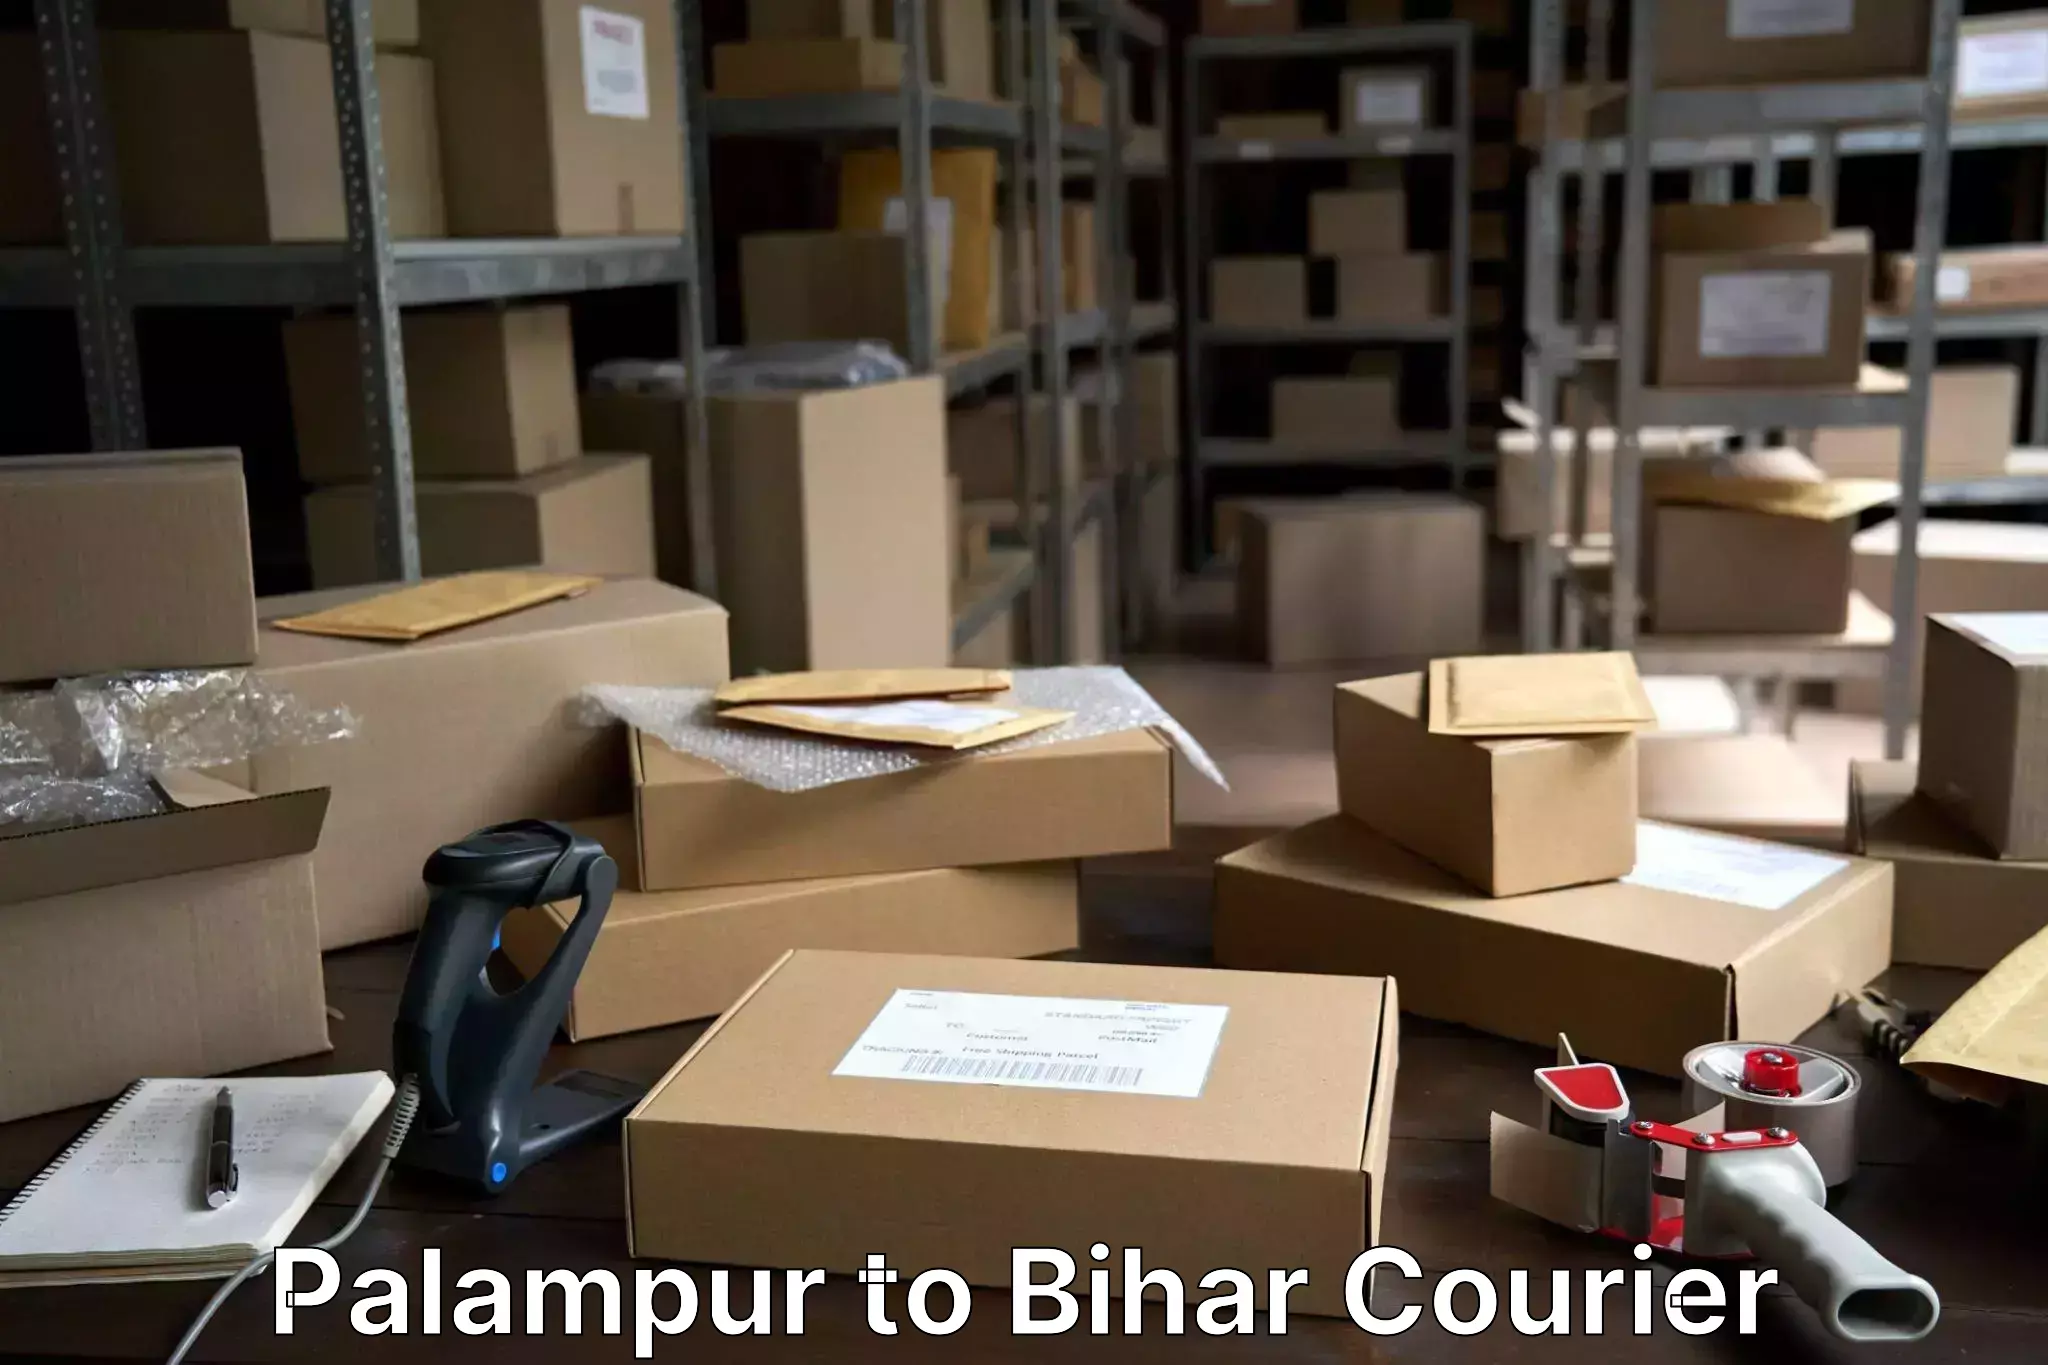 Baggage shipping service Palampur to Bikramganj